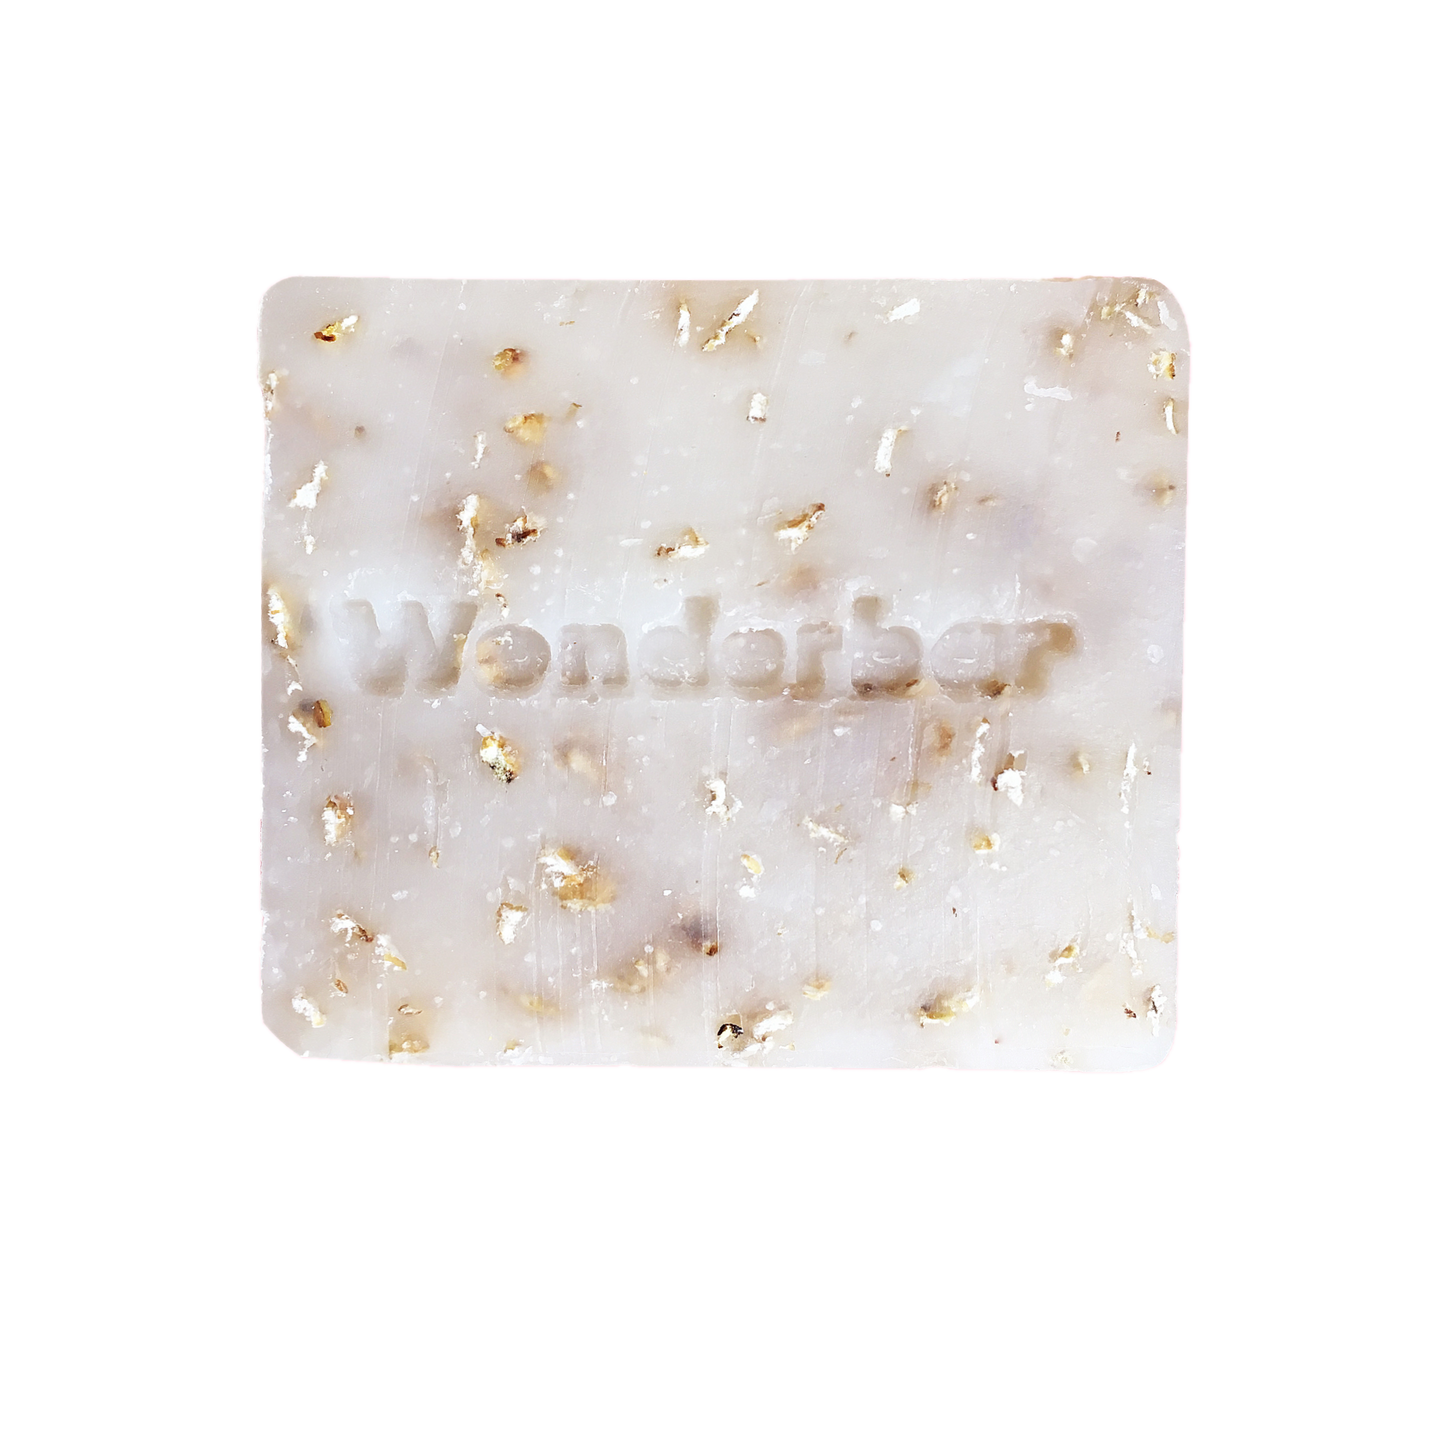 Wonderbar - 99 PROBLEMS BUT A PEACH AIN’T ONE Peach & Oat Peeling Soap 100g